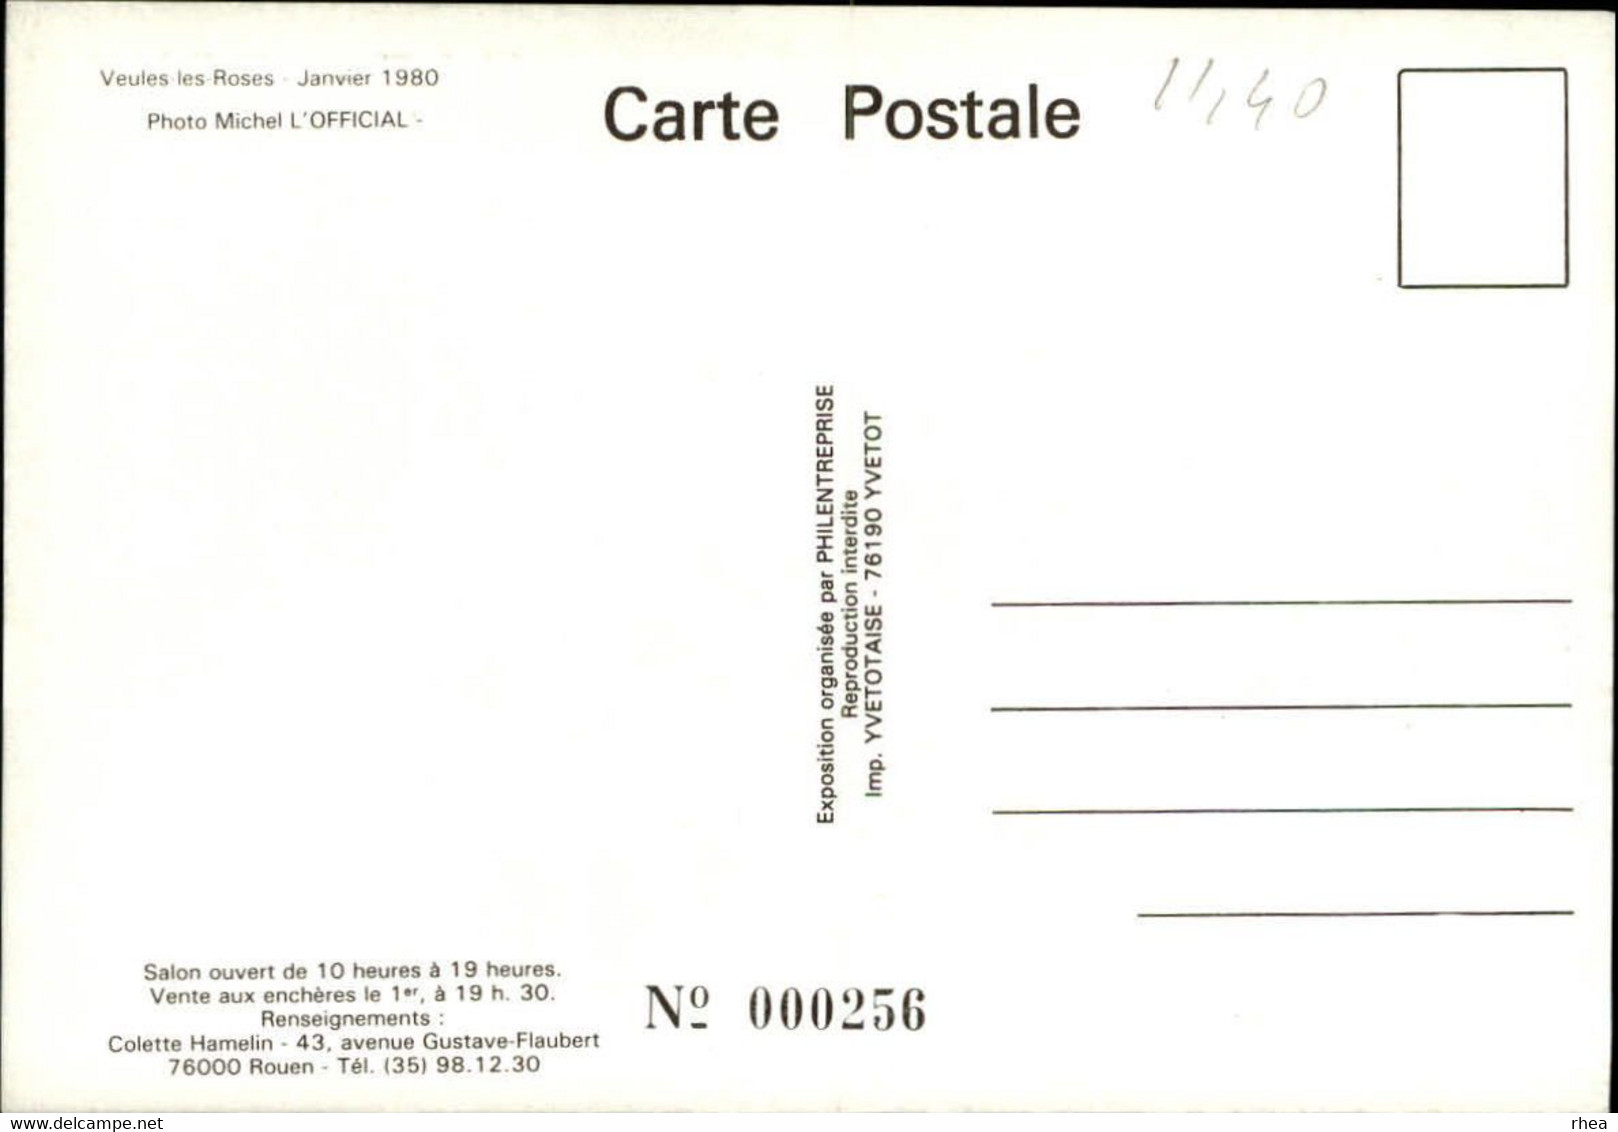 SALONS DE COLLECTIONS - Salon De Cartes Postales -  ROUEN - Pecheurs - VEULES LES ROSES - 1980 - Bourses & Salons De Collections